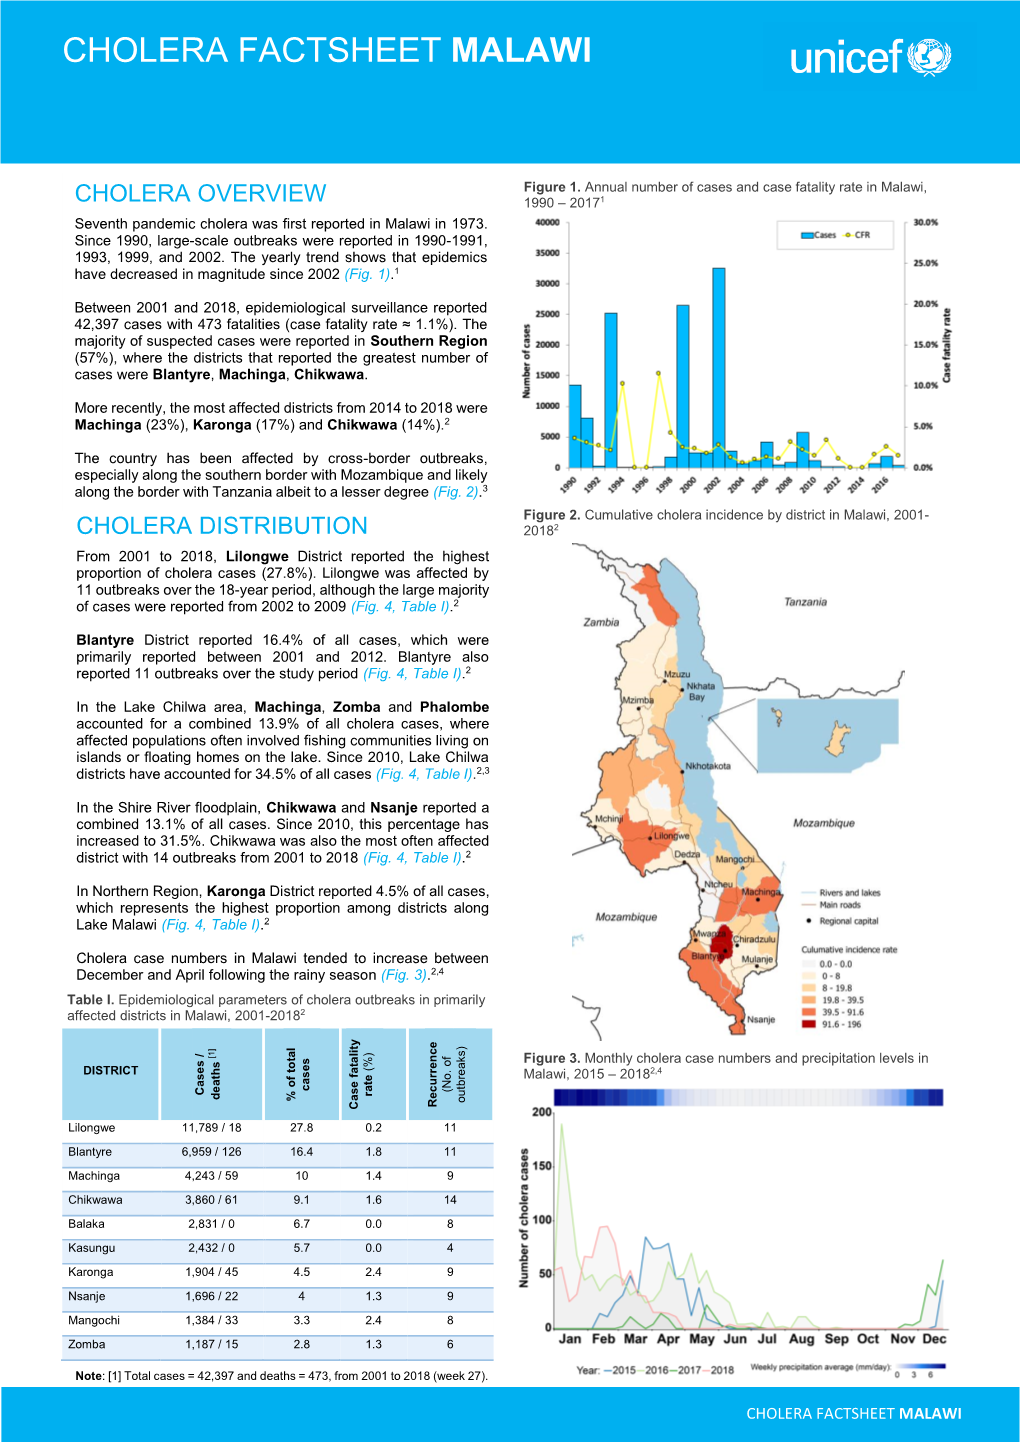 Cholera Factsheet Malawi